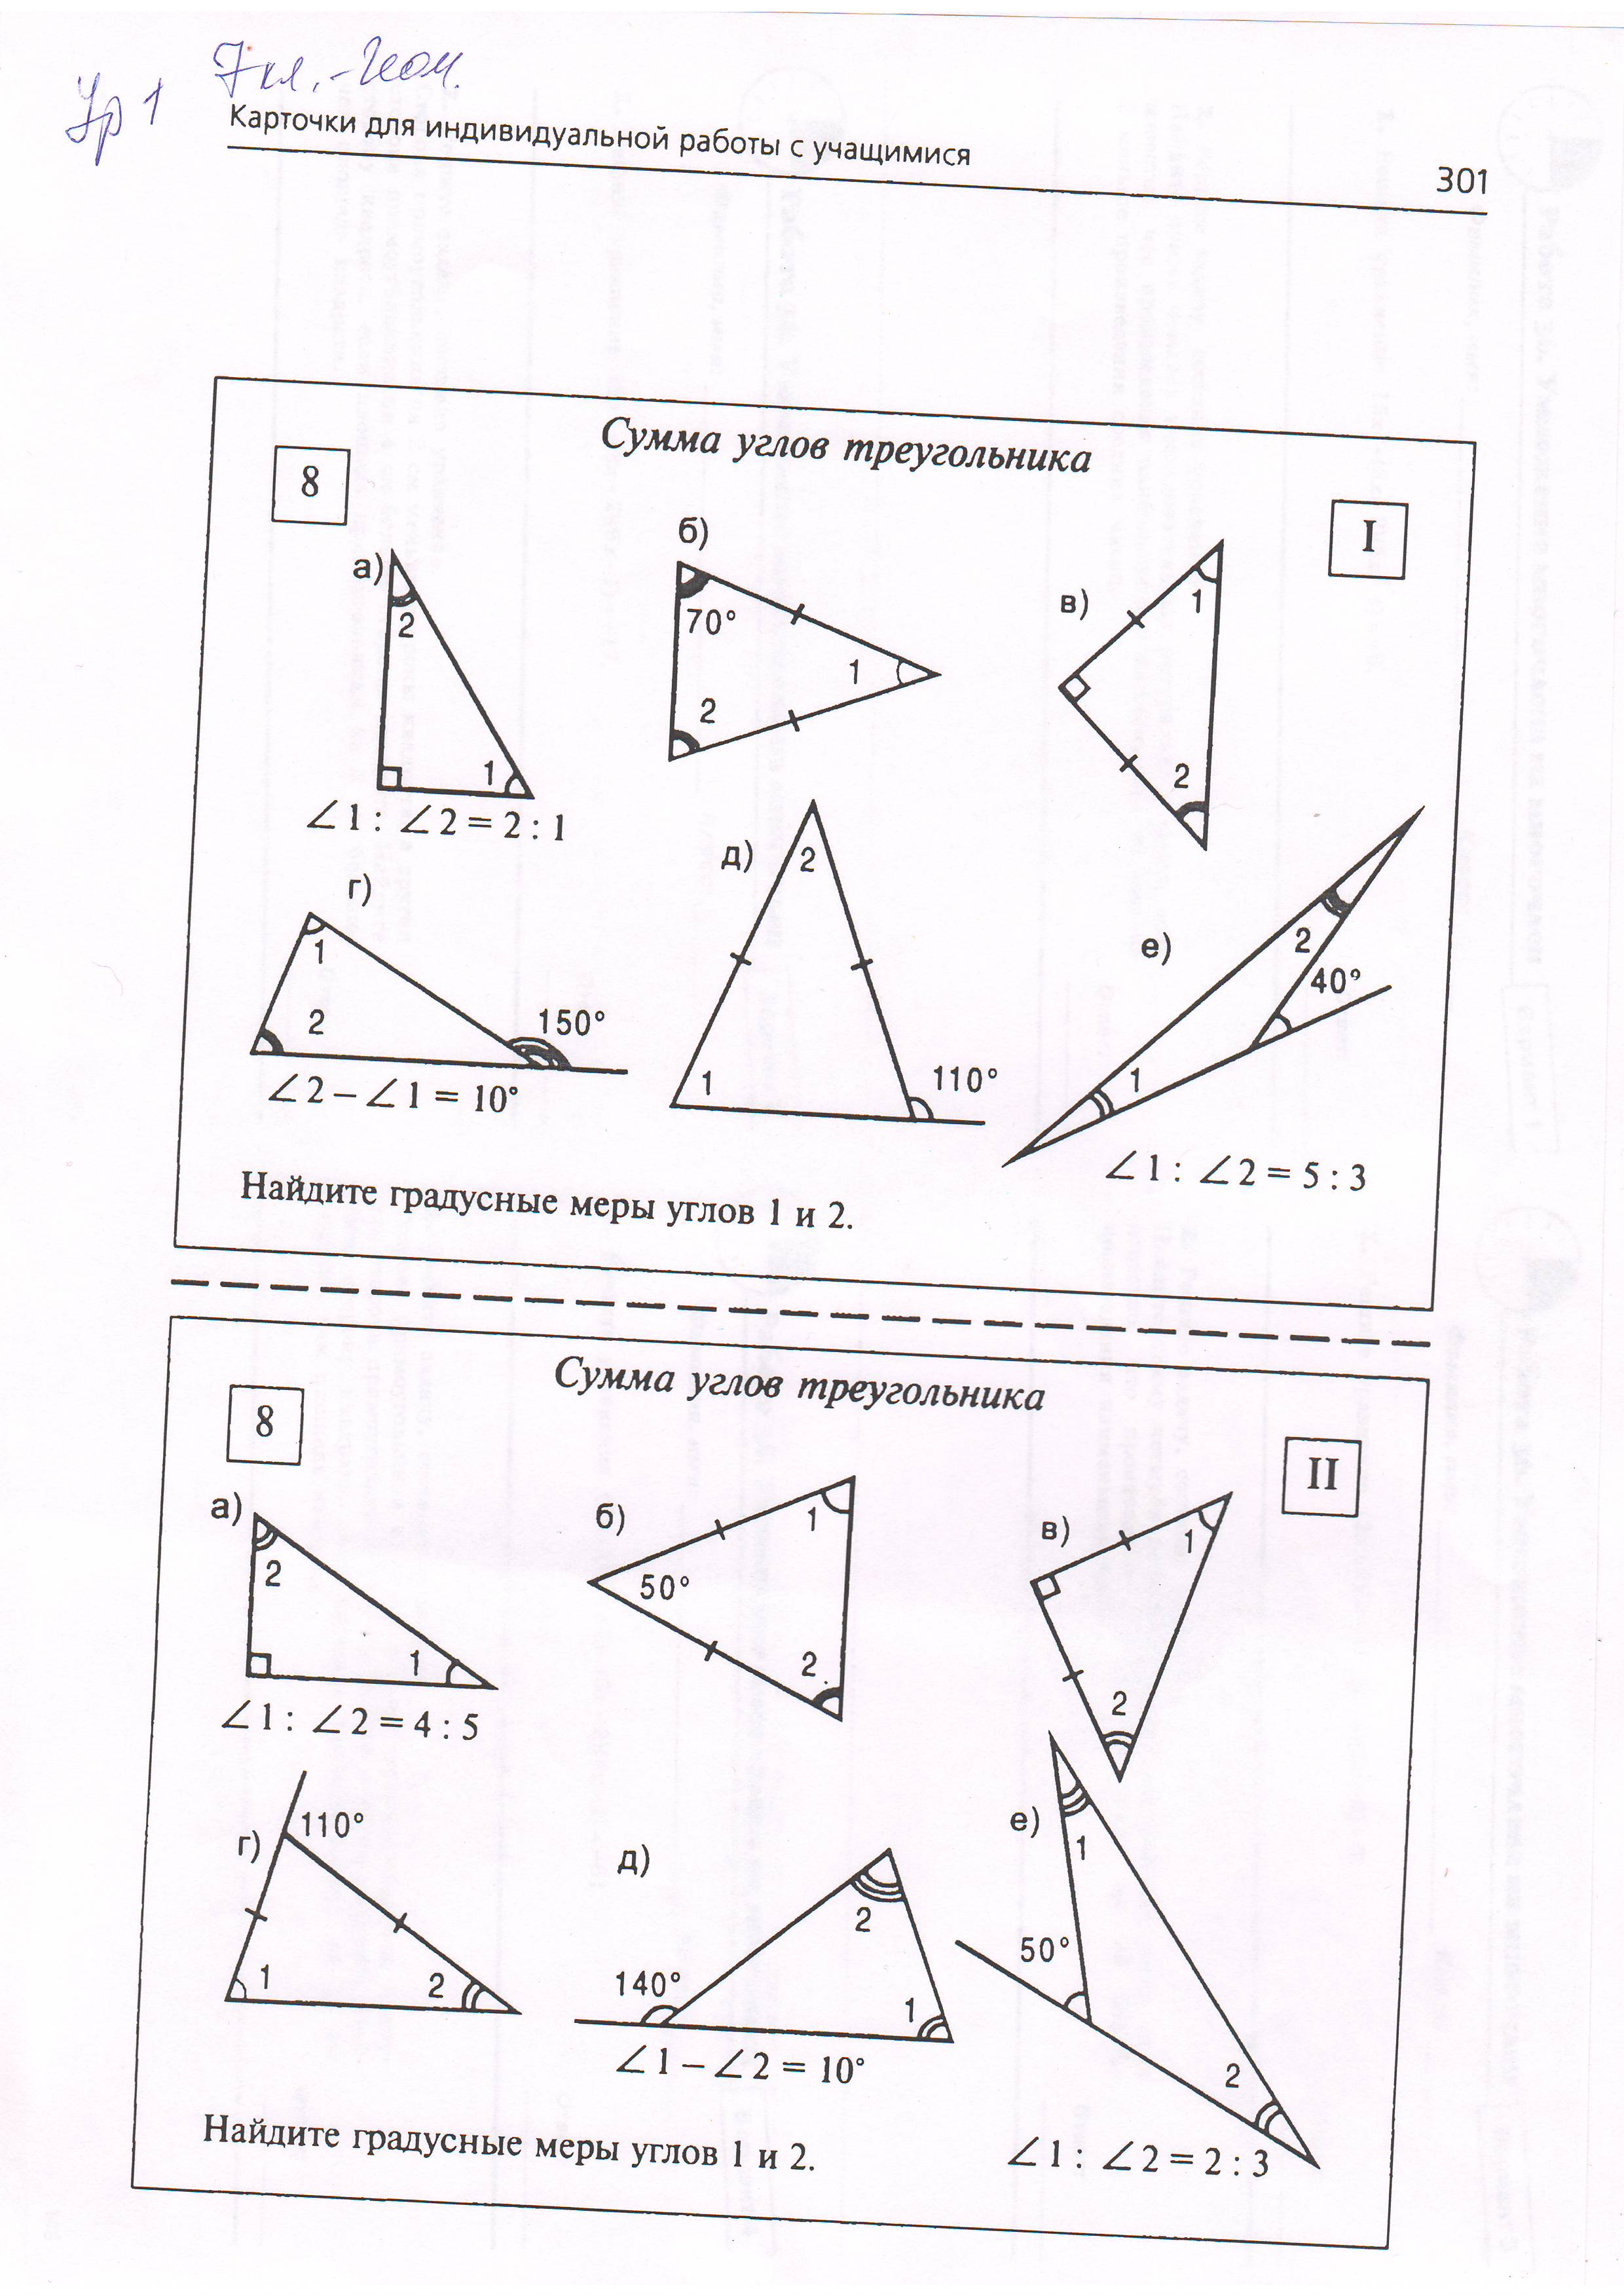 Конспект урока Сумма углов треугольника (7 класс)